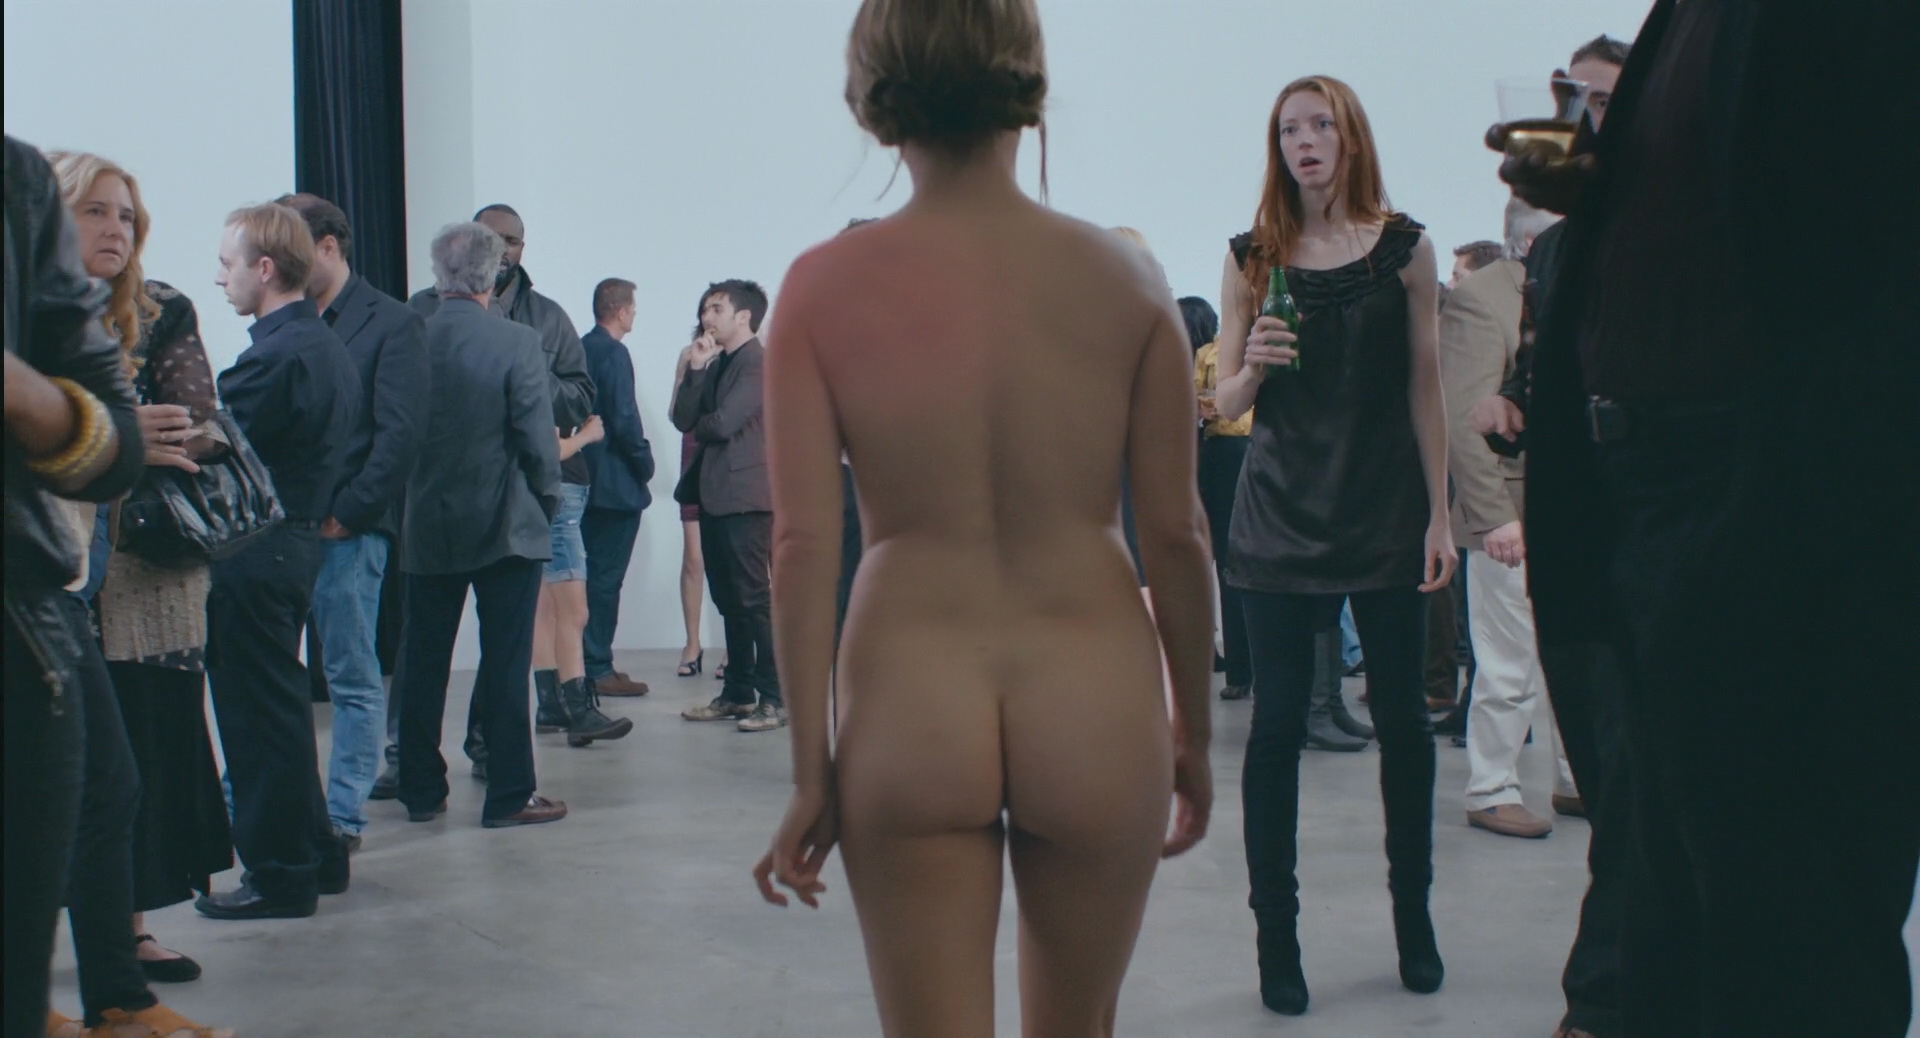 Jennifer Jason Leigh Nude Porn - Watch Online - Jennifer Jason Leigh â€“ The Moment (2013) HD 1080p